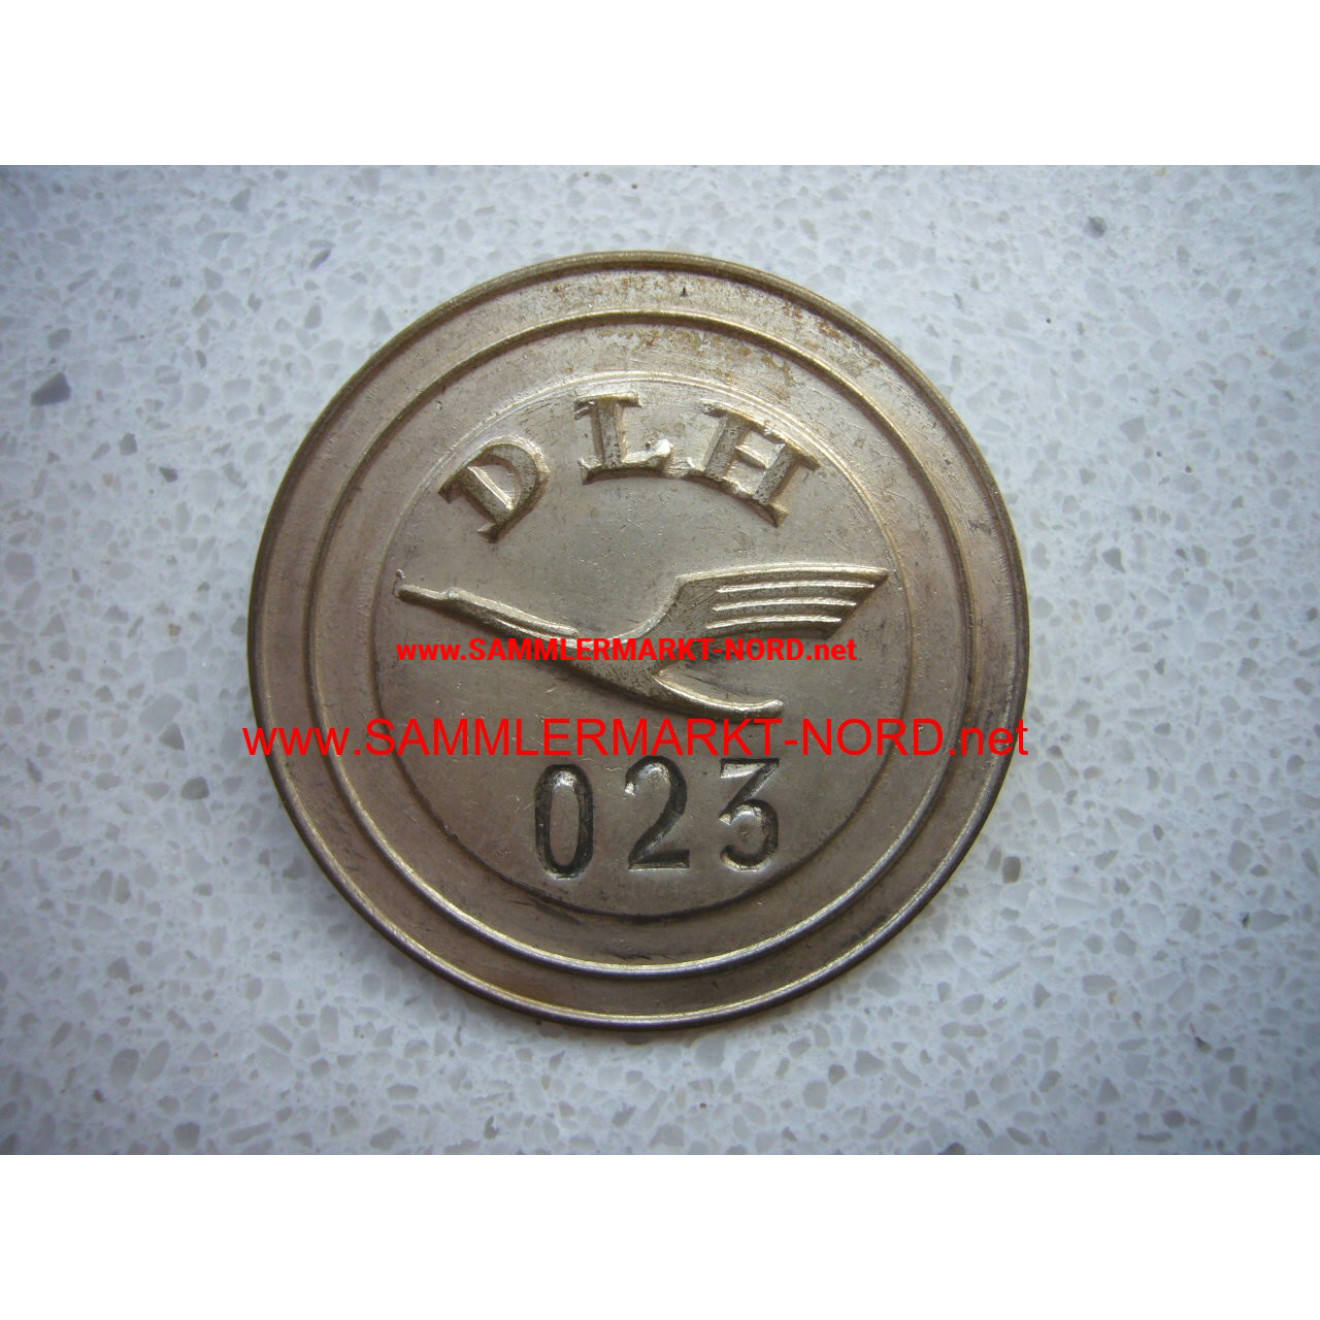 DLH Deutsche Lufthansa - ID badge for employees